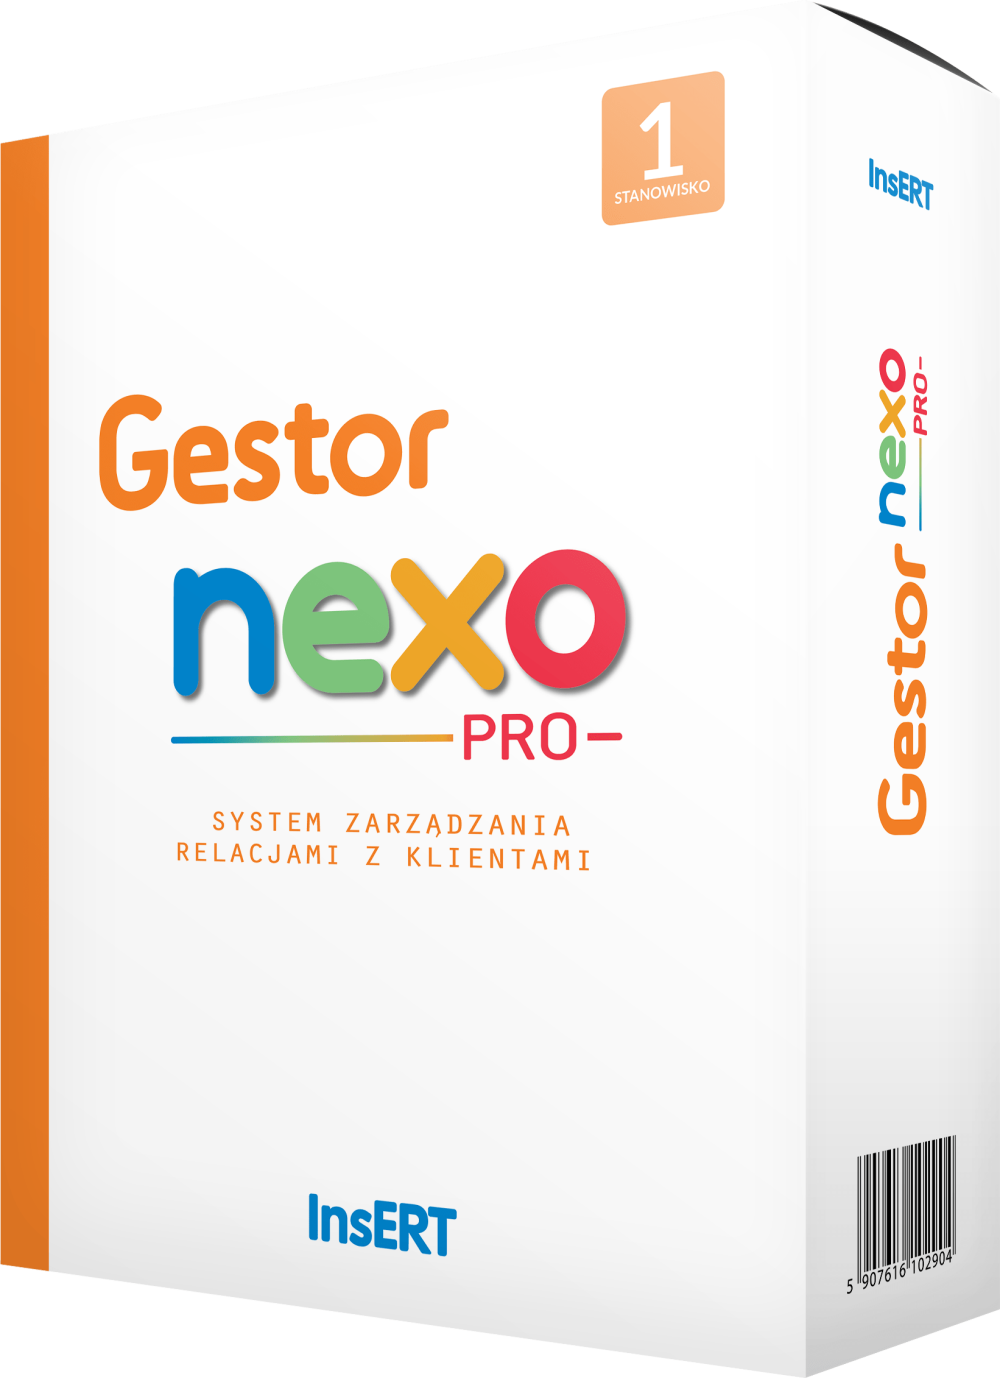 Gestor_nexo_PRO_pudelko_dsgsoftware